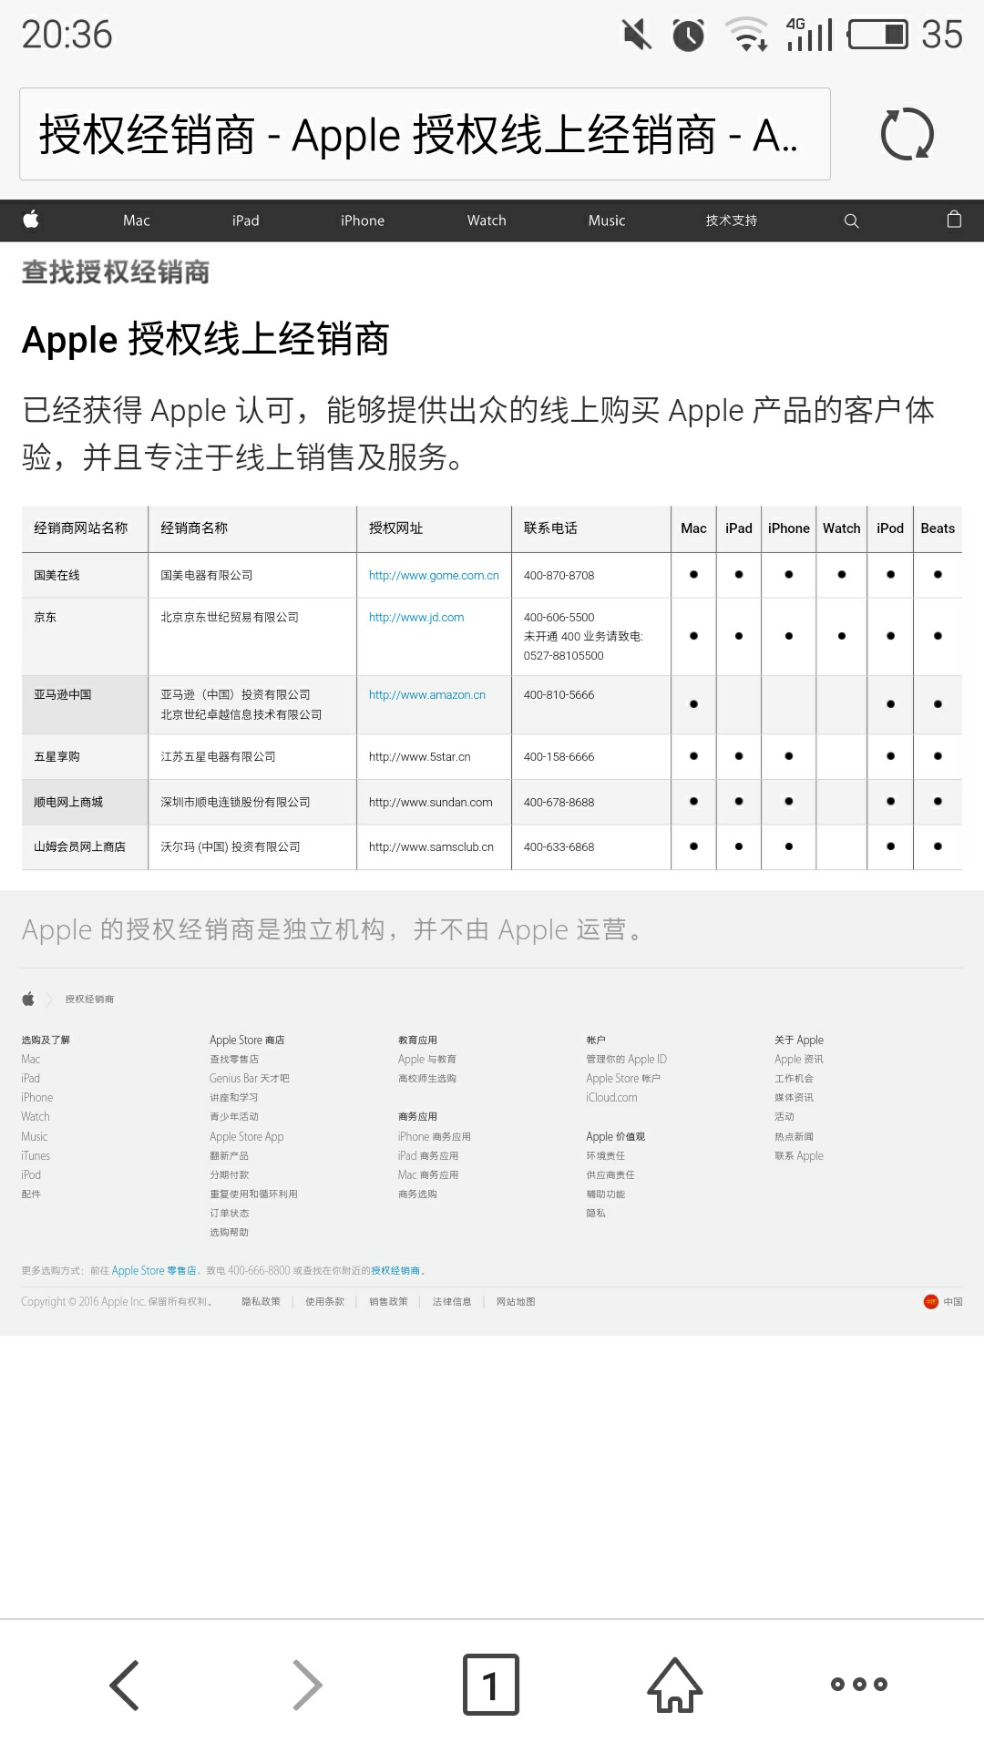 亚马逊中国官网的苹果电脑为什么很多人评价假